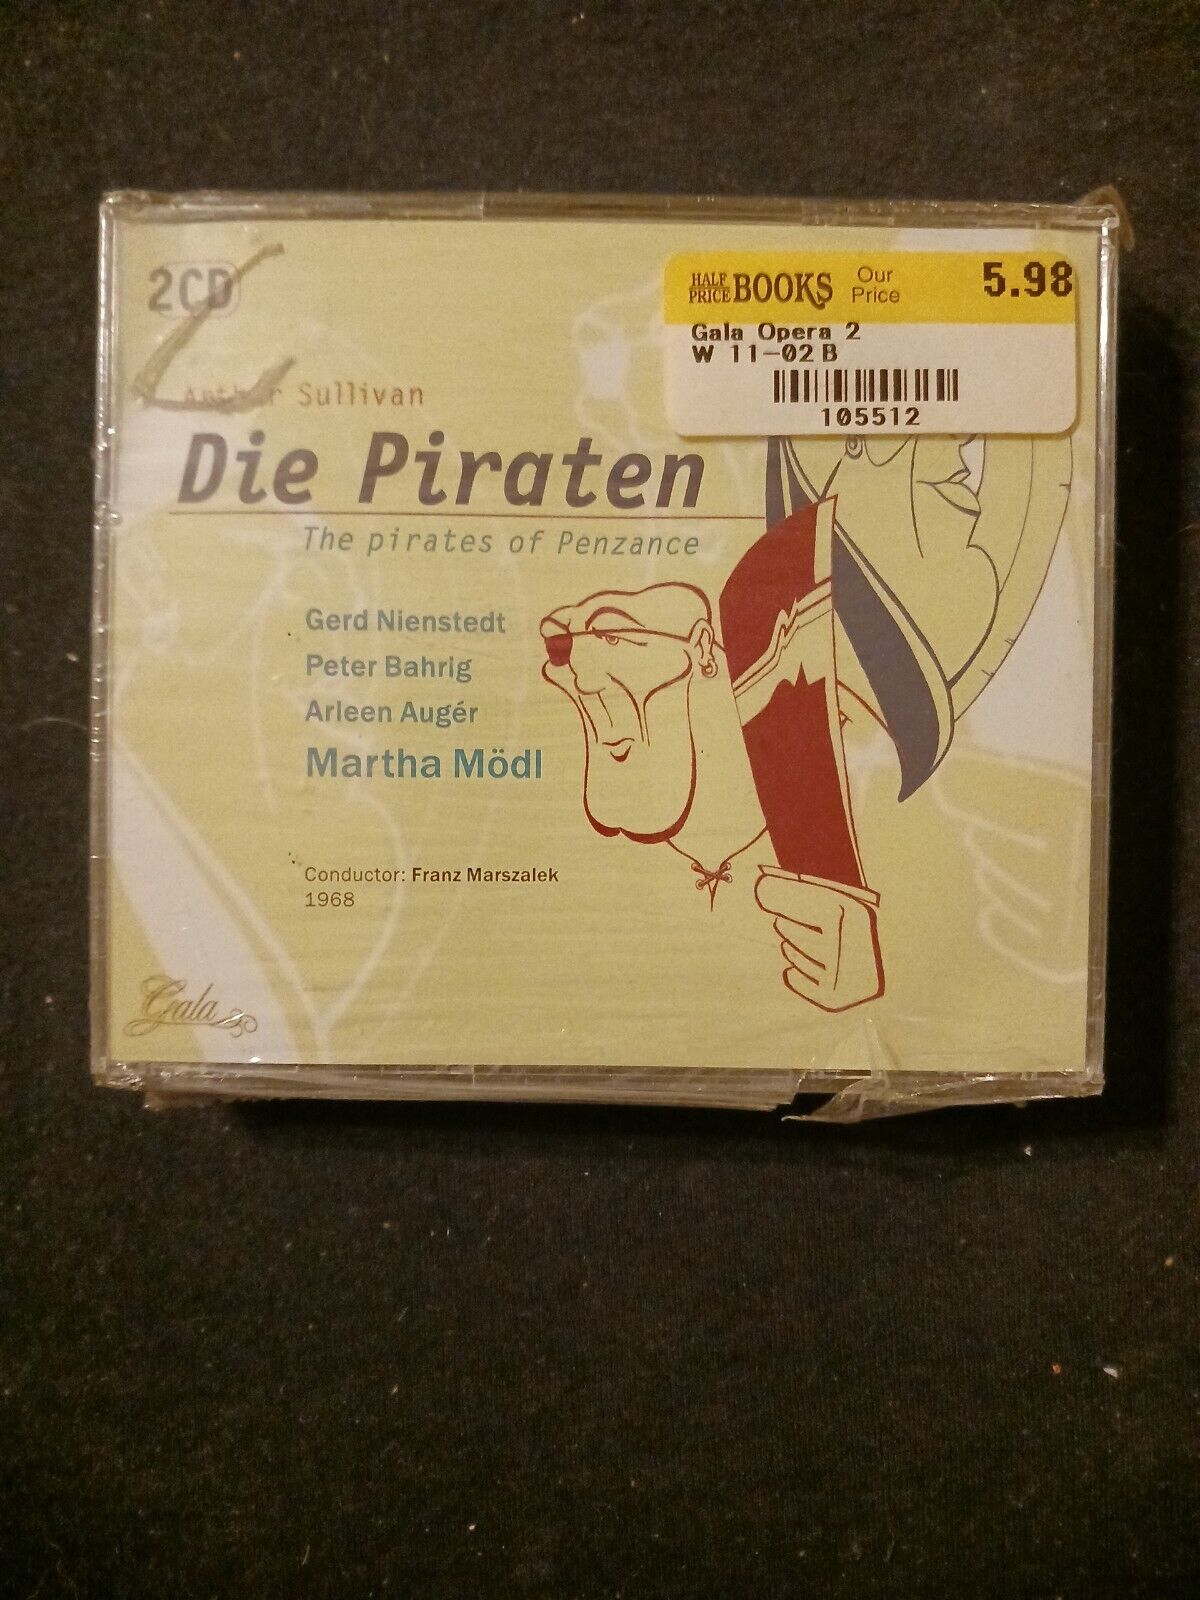 Sullivan: The Pirates of Penzance (Die Piraten) - Modl, Nienstedt 1968 CD, Gala